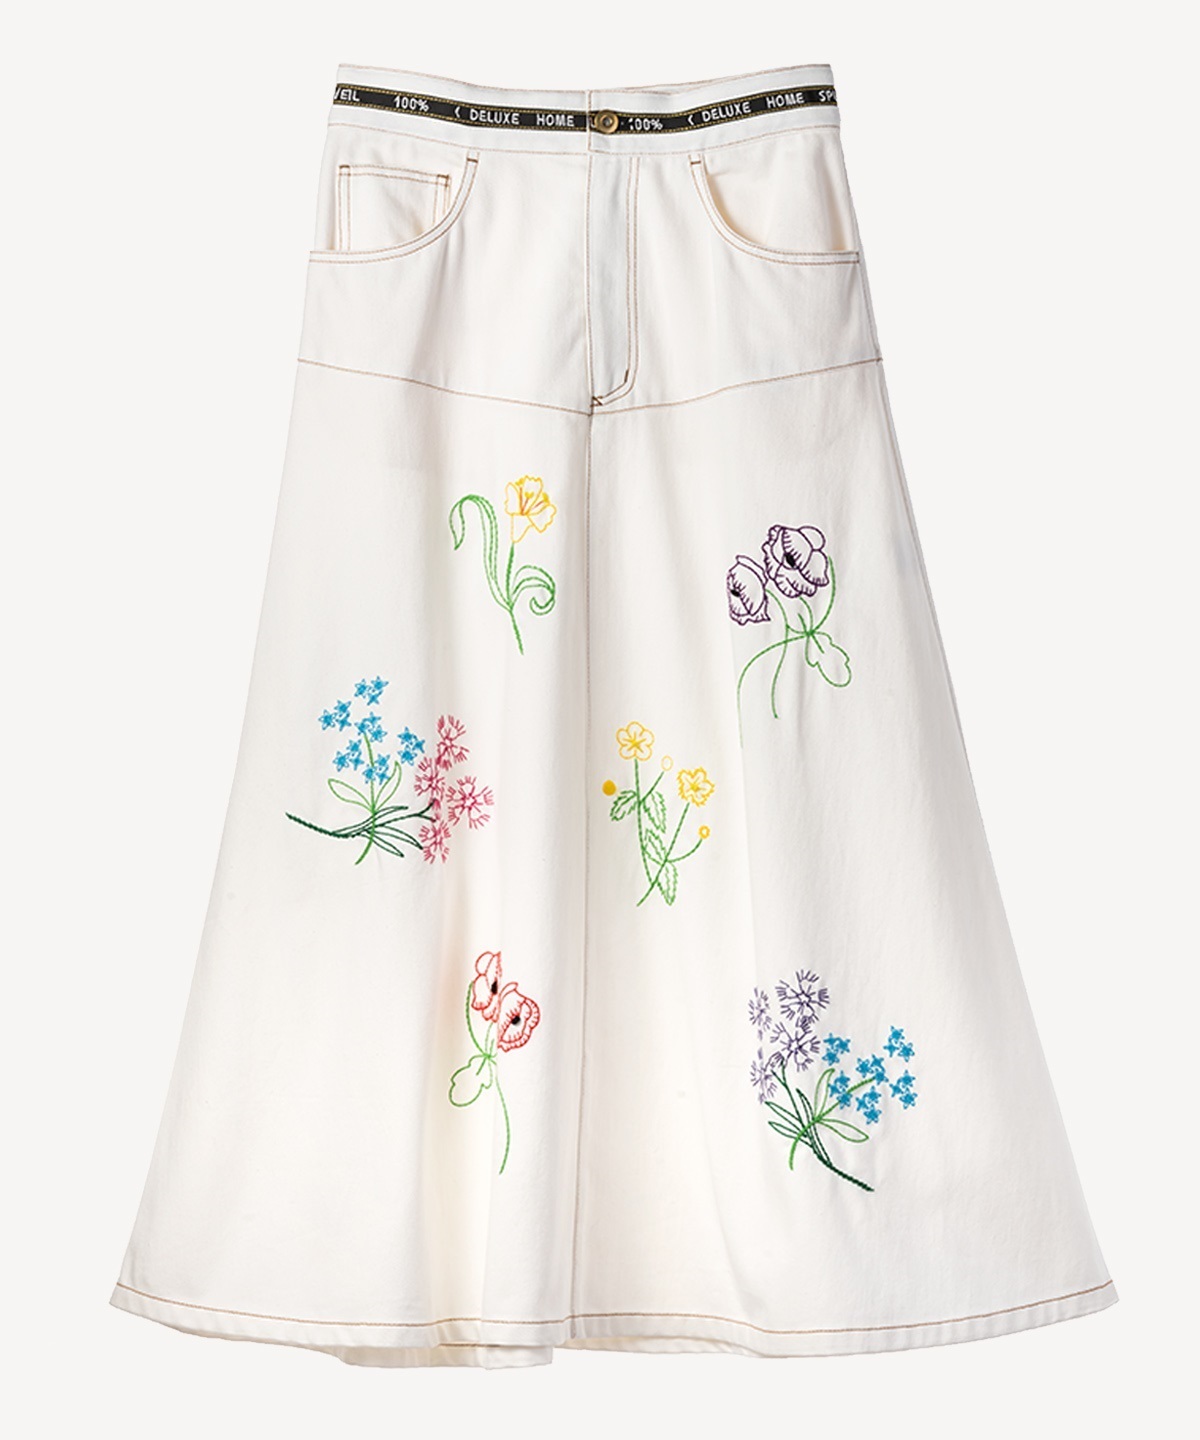 フラワー刺繍スカート(white-36)